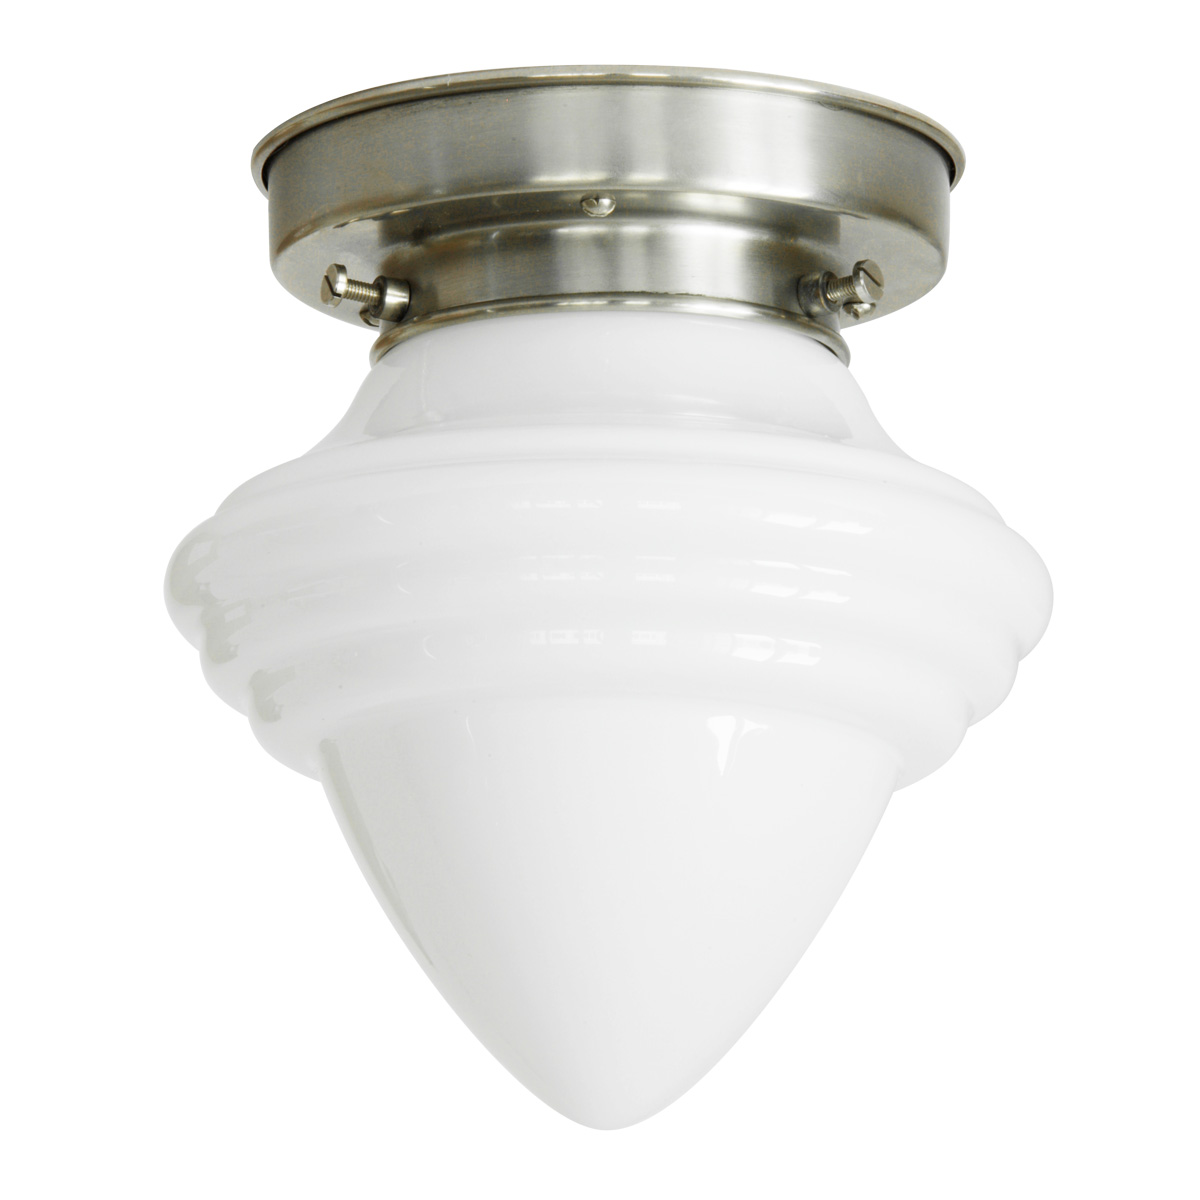 Kleine Deckenlampe mit spitzem Art déco-Opalglas Ø 16 cm: Spitze Deckenleuchte, abgebildet mit getrepptem Deckenteil in Messing mattvernickelt